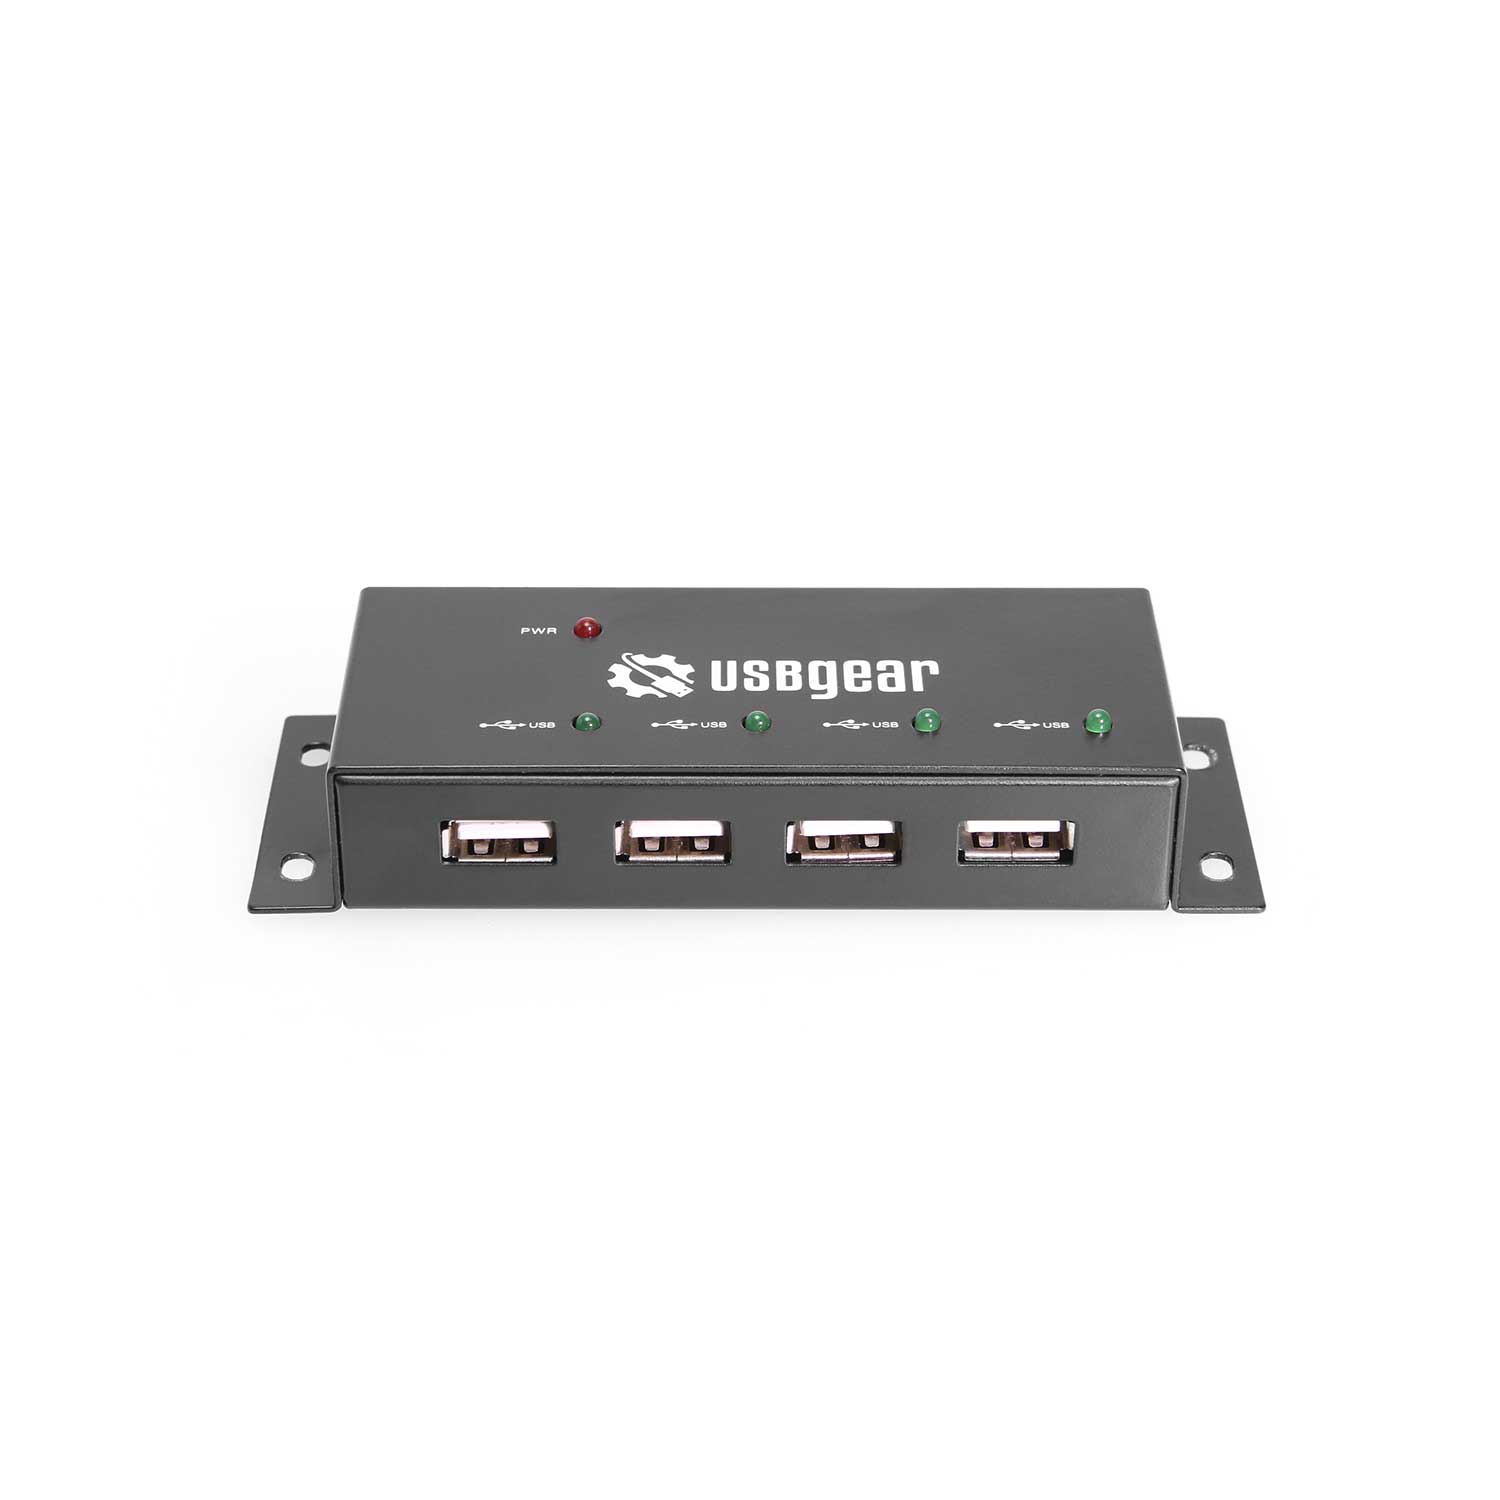 USBGear 4-Port USB 2.0 Mini Metal High-Speed Hub